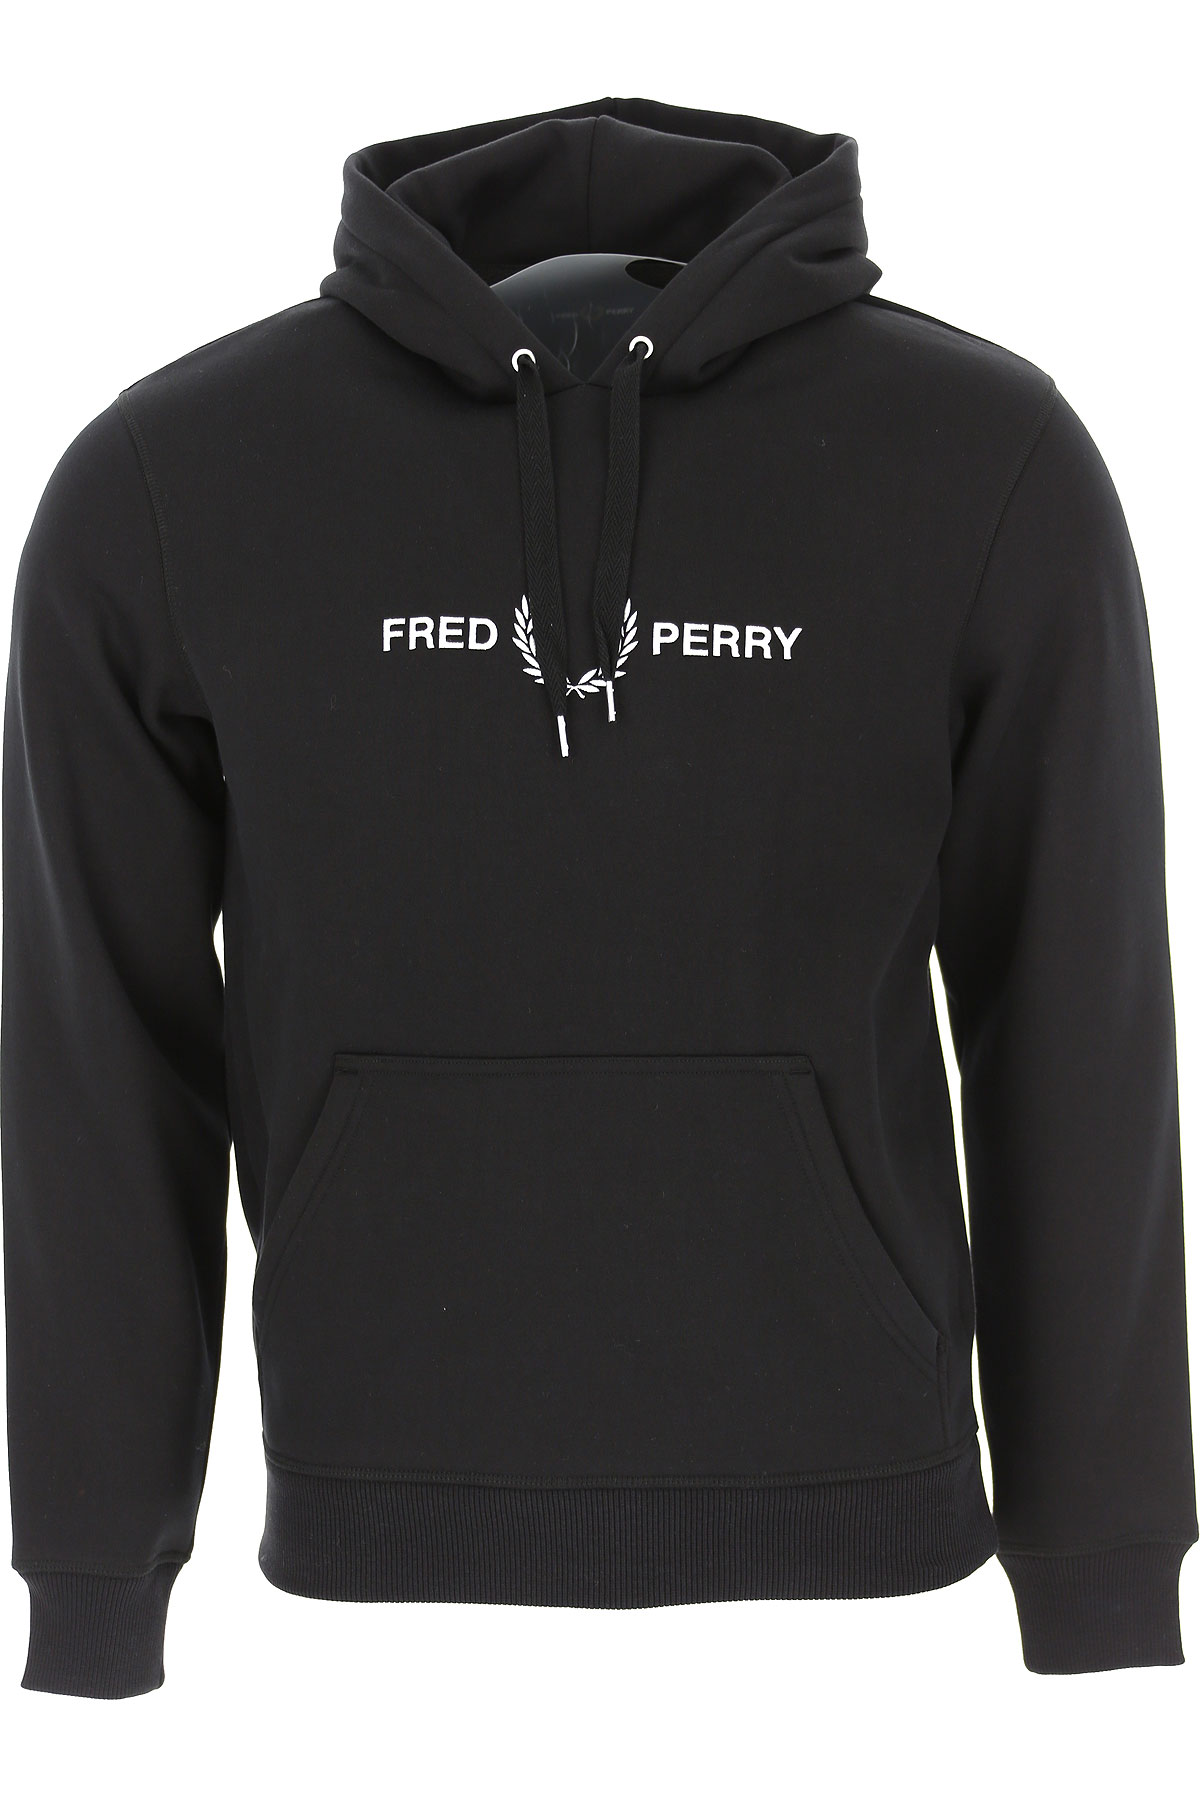 Fred Perry Sweatshirt für Herren, Kapuzenpulli, Hoodie, Sweats Günstig im Sale, Schwarz, Polyester, 2017, L M S XS